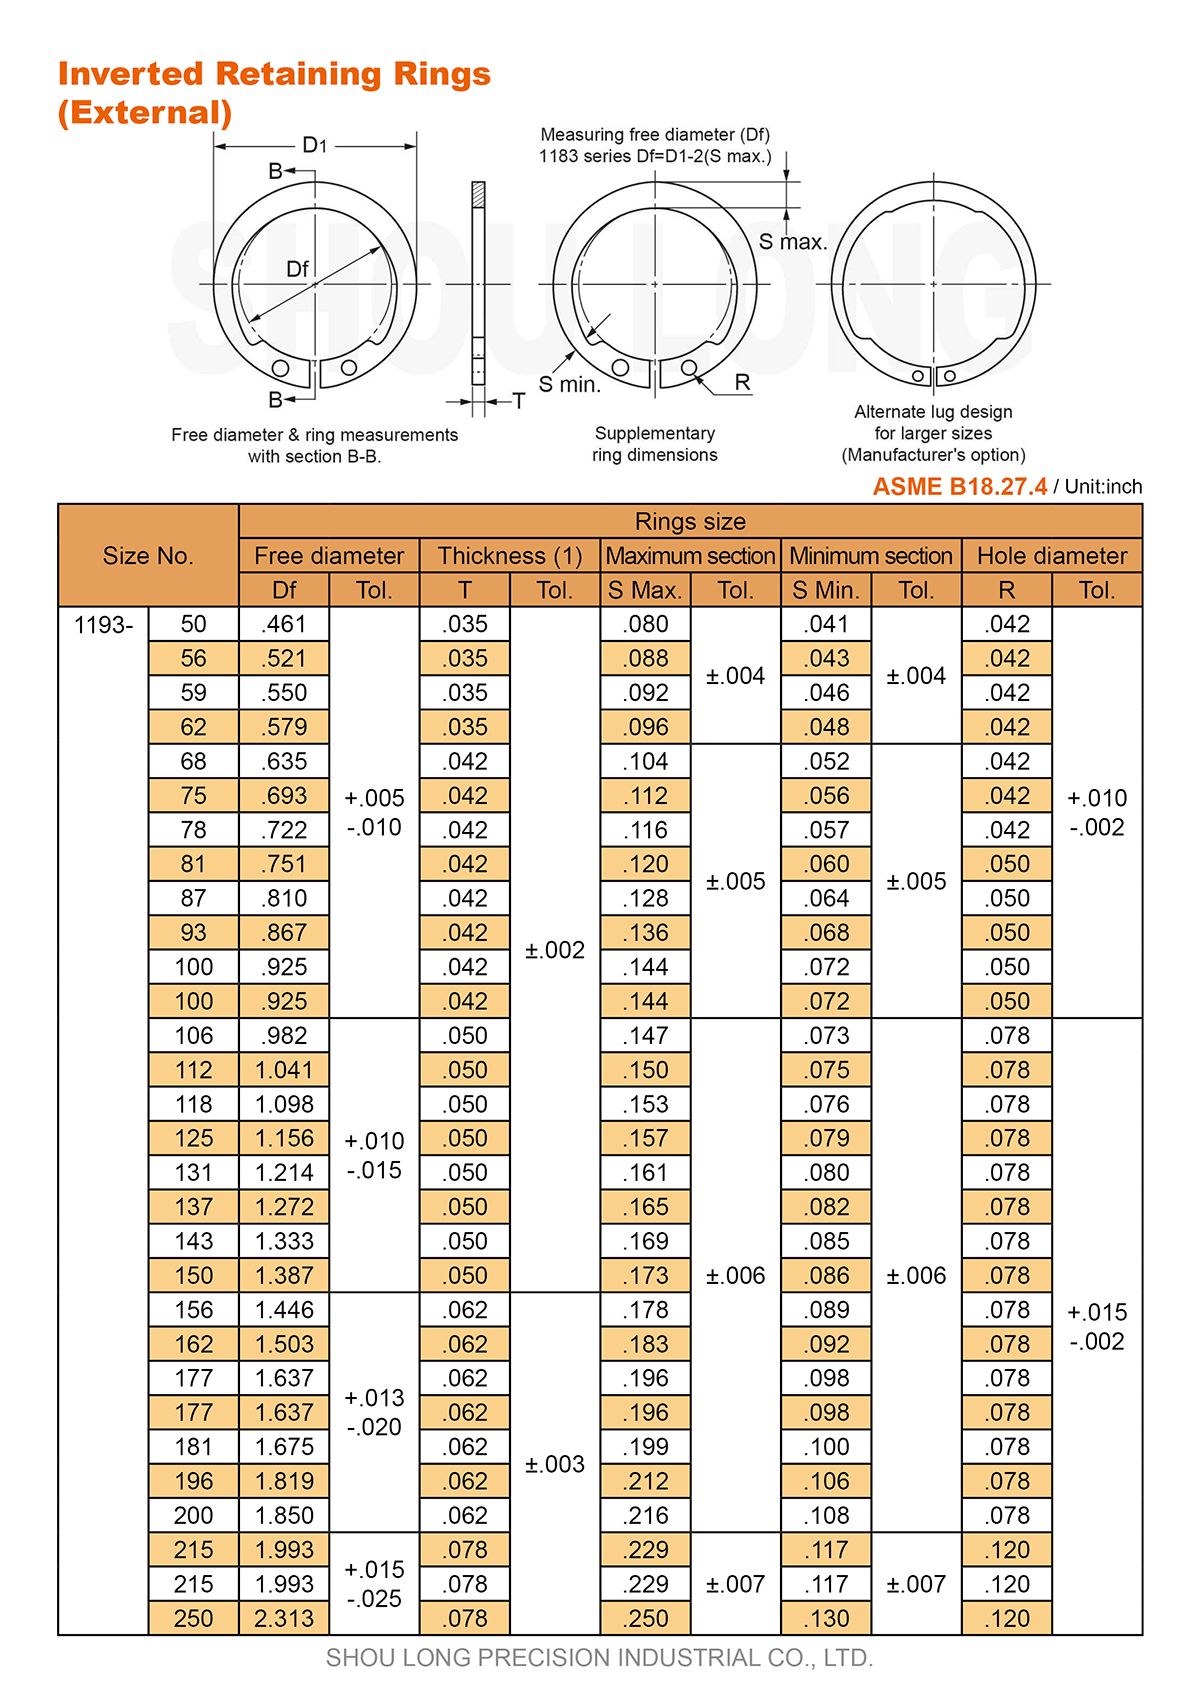 Спецификация дюймовых инвертированных удерживающих колец для вала ASME/ANSI B18.27.4 - 1